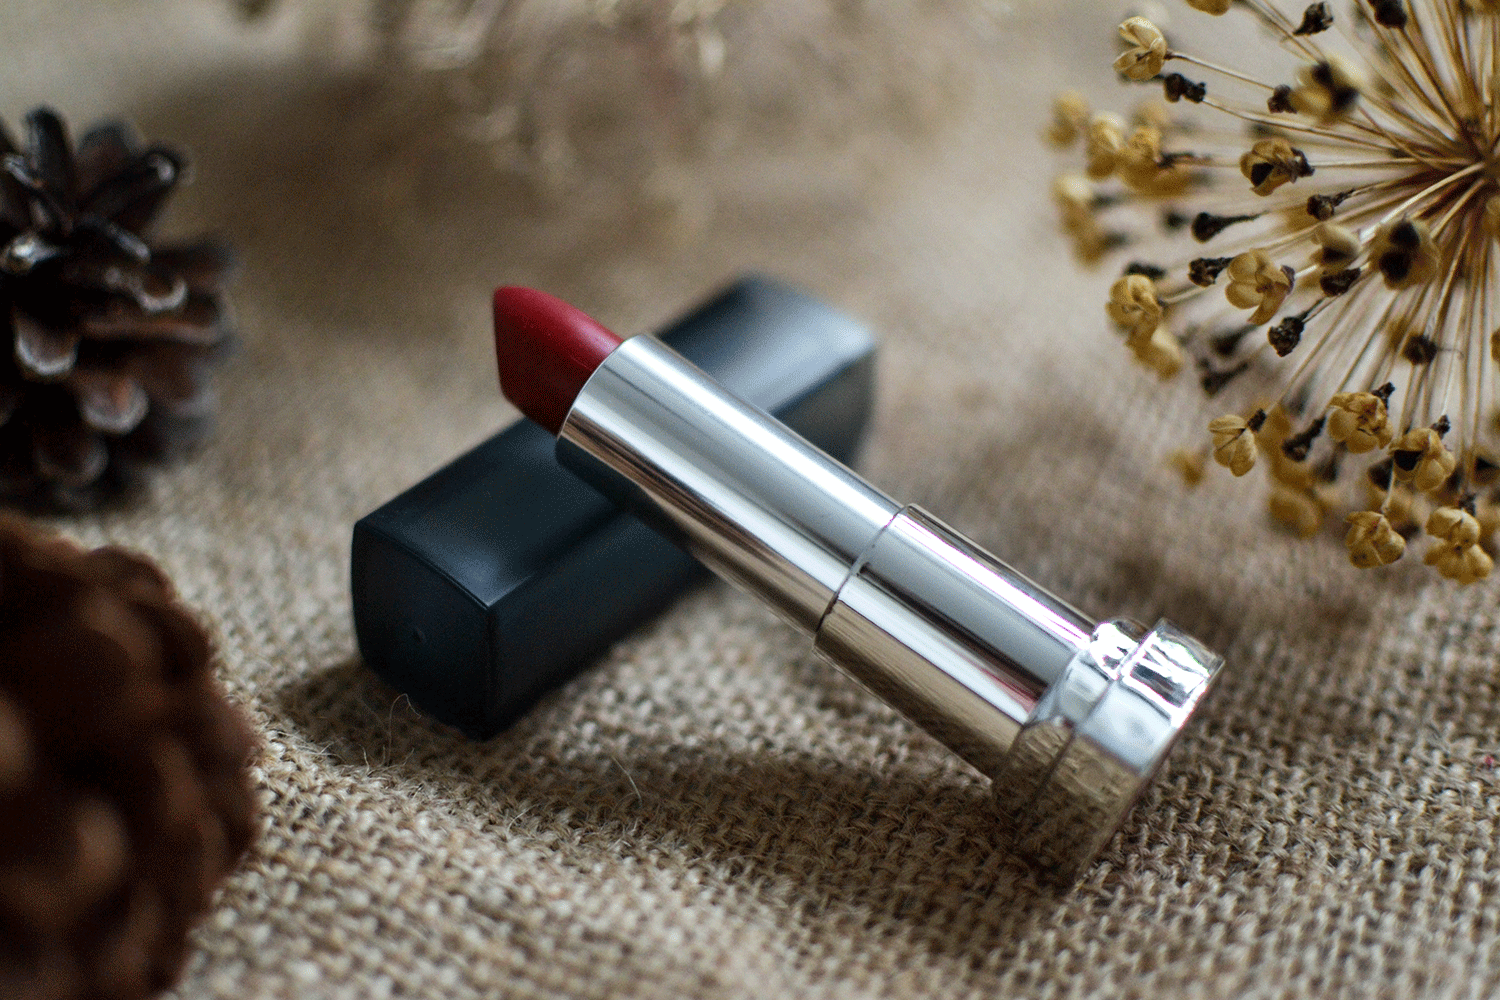 Lieblings - Lippenstift ❤️ #lipstick #beauty #lippenstiftsammlung #lips #red